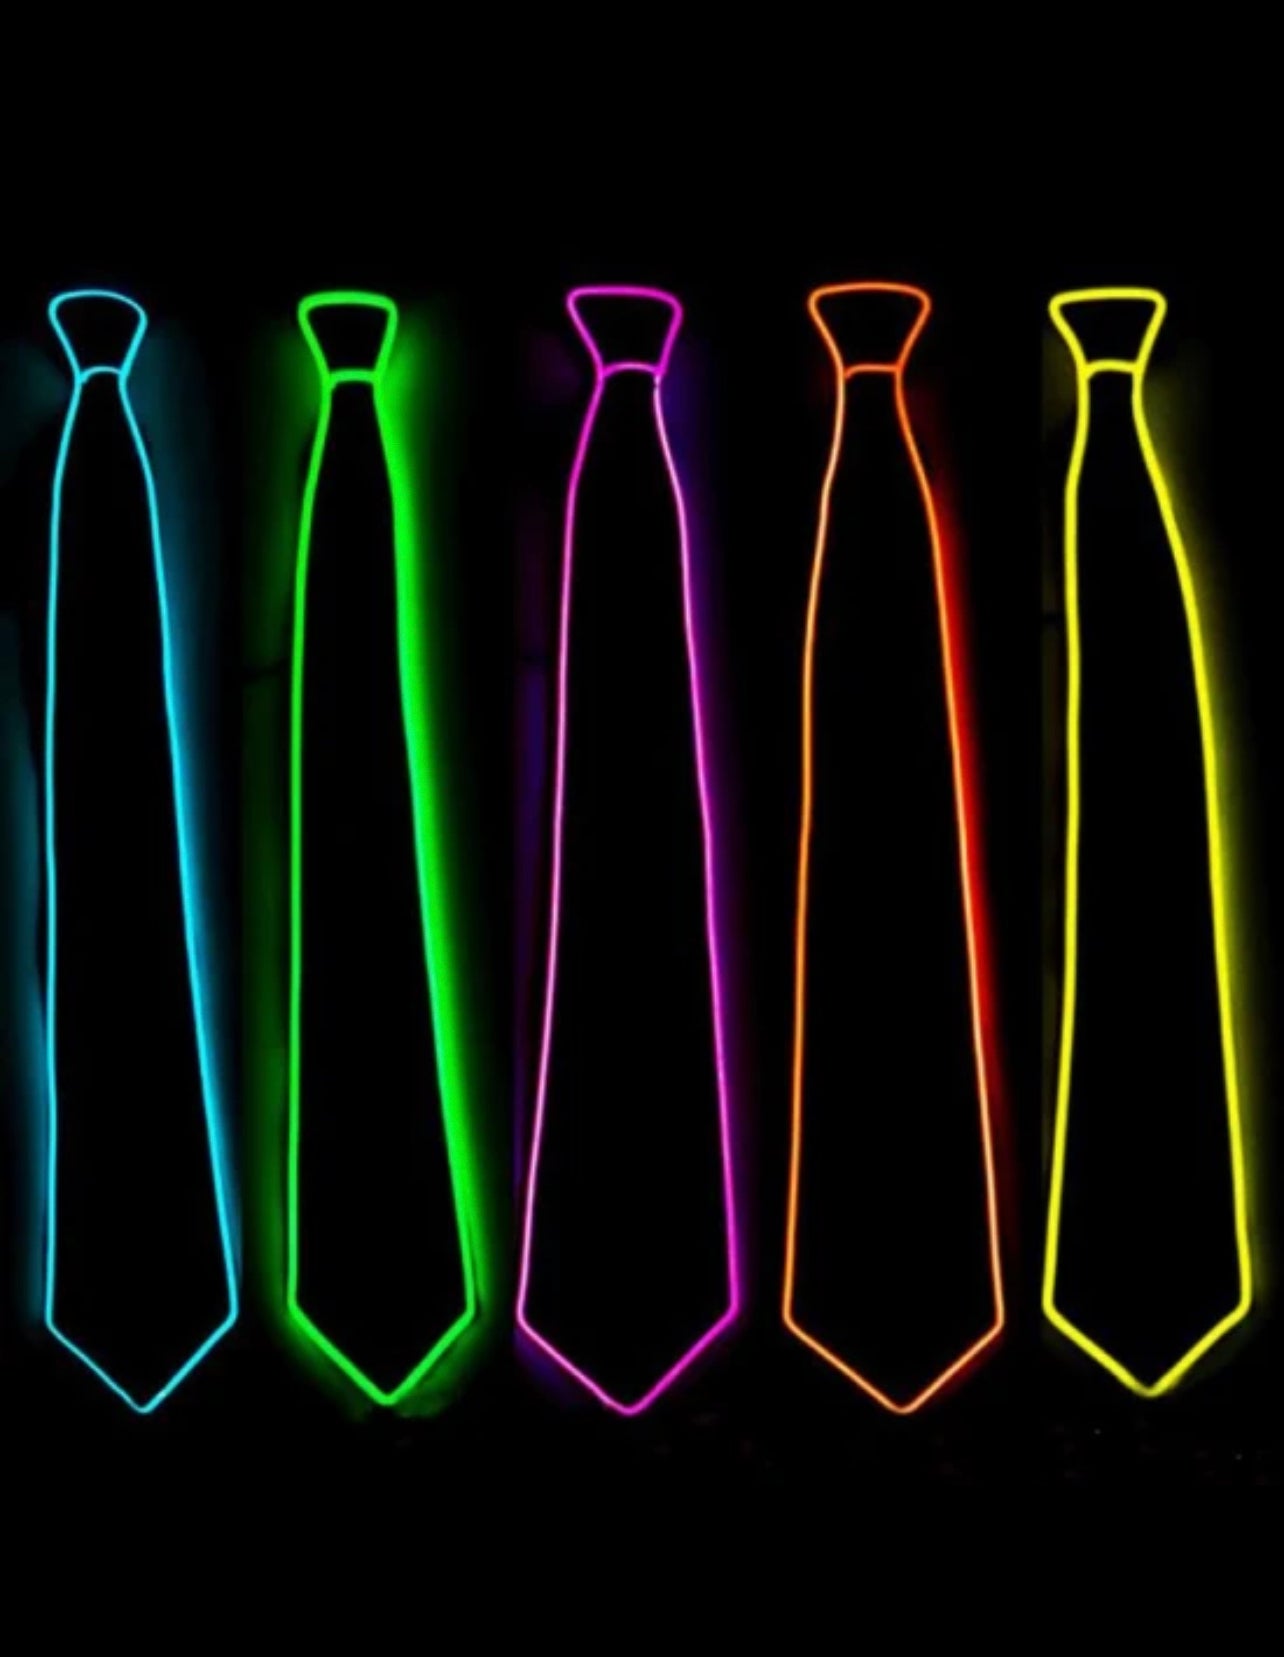 Led tie - pack of 4 ties